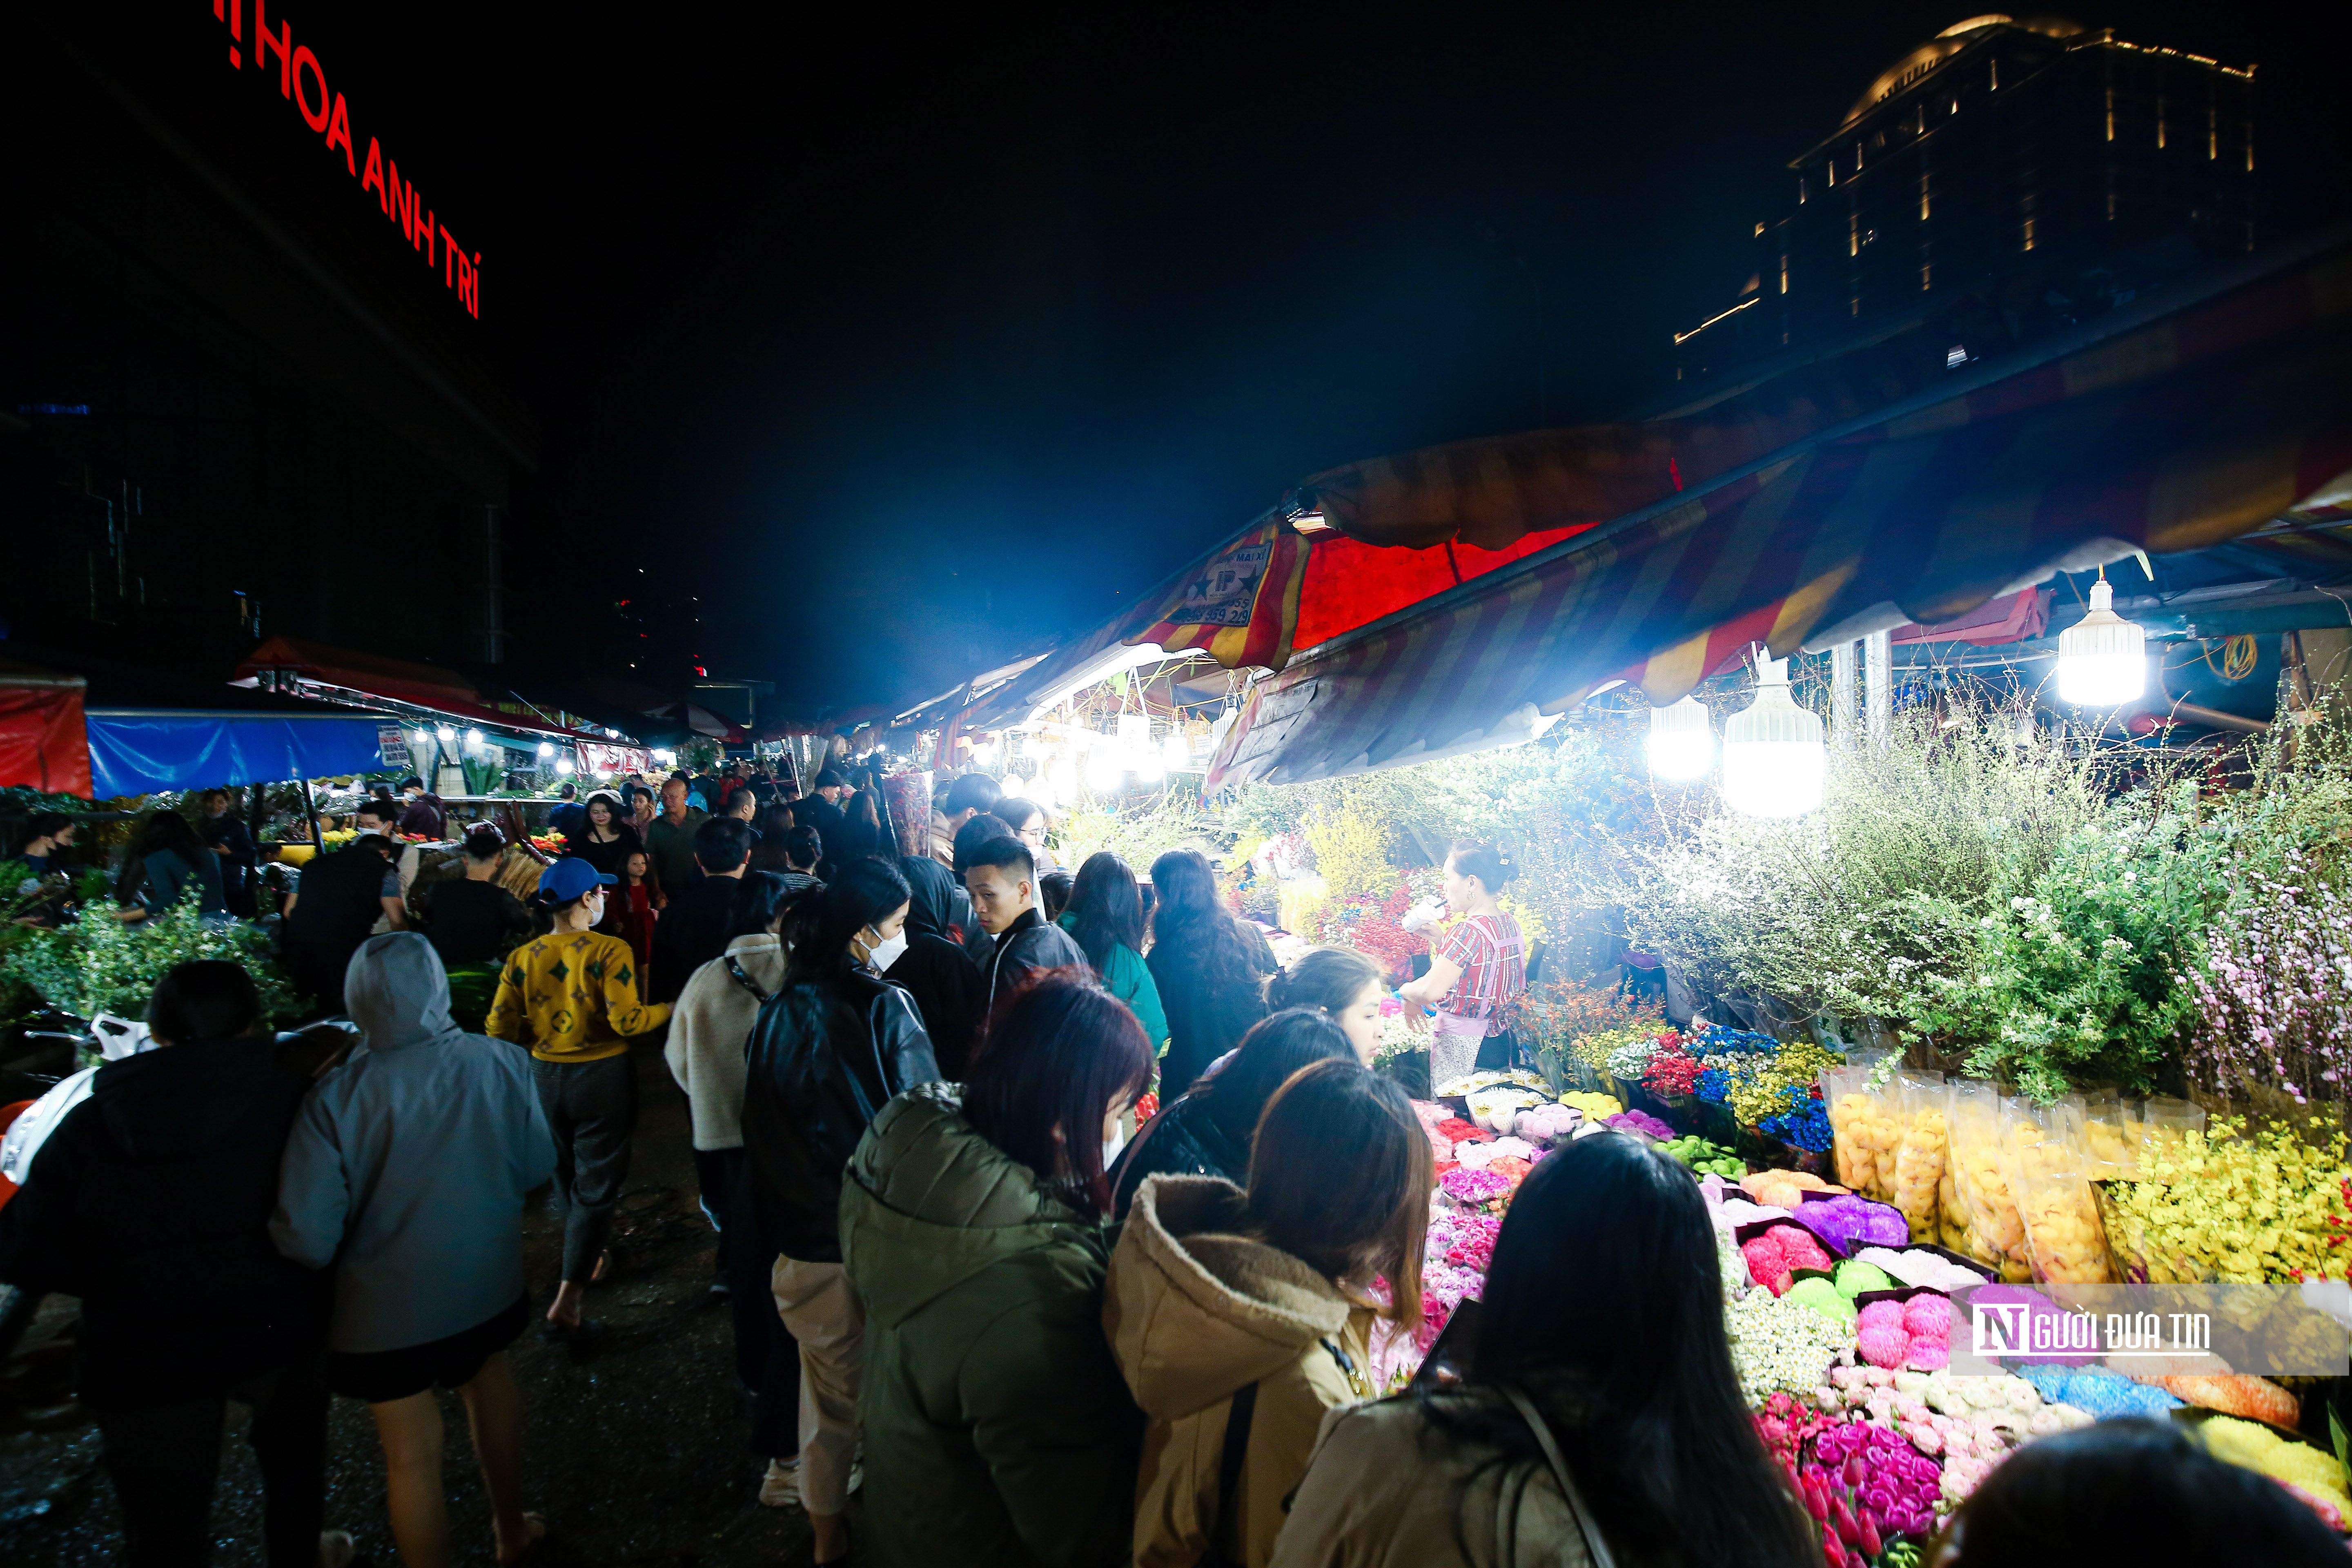 Dân sinh - Khung cảnh tấp nập tại chợ hoa Quảng An ngày cận Tết (Hình 5).